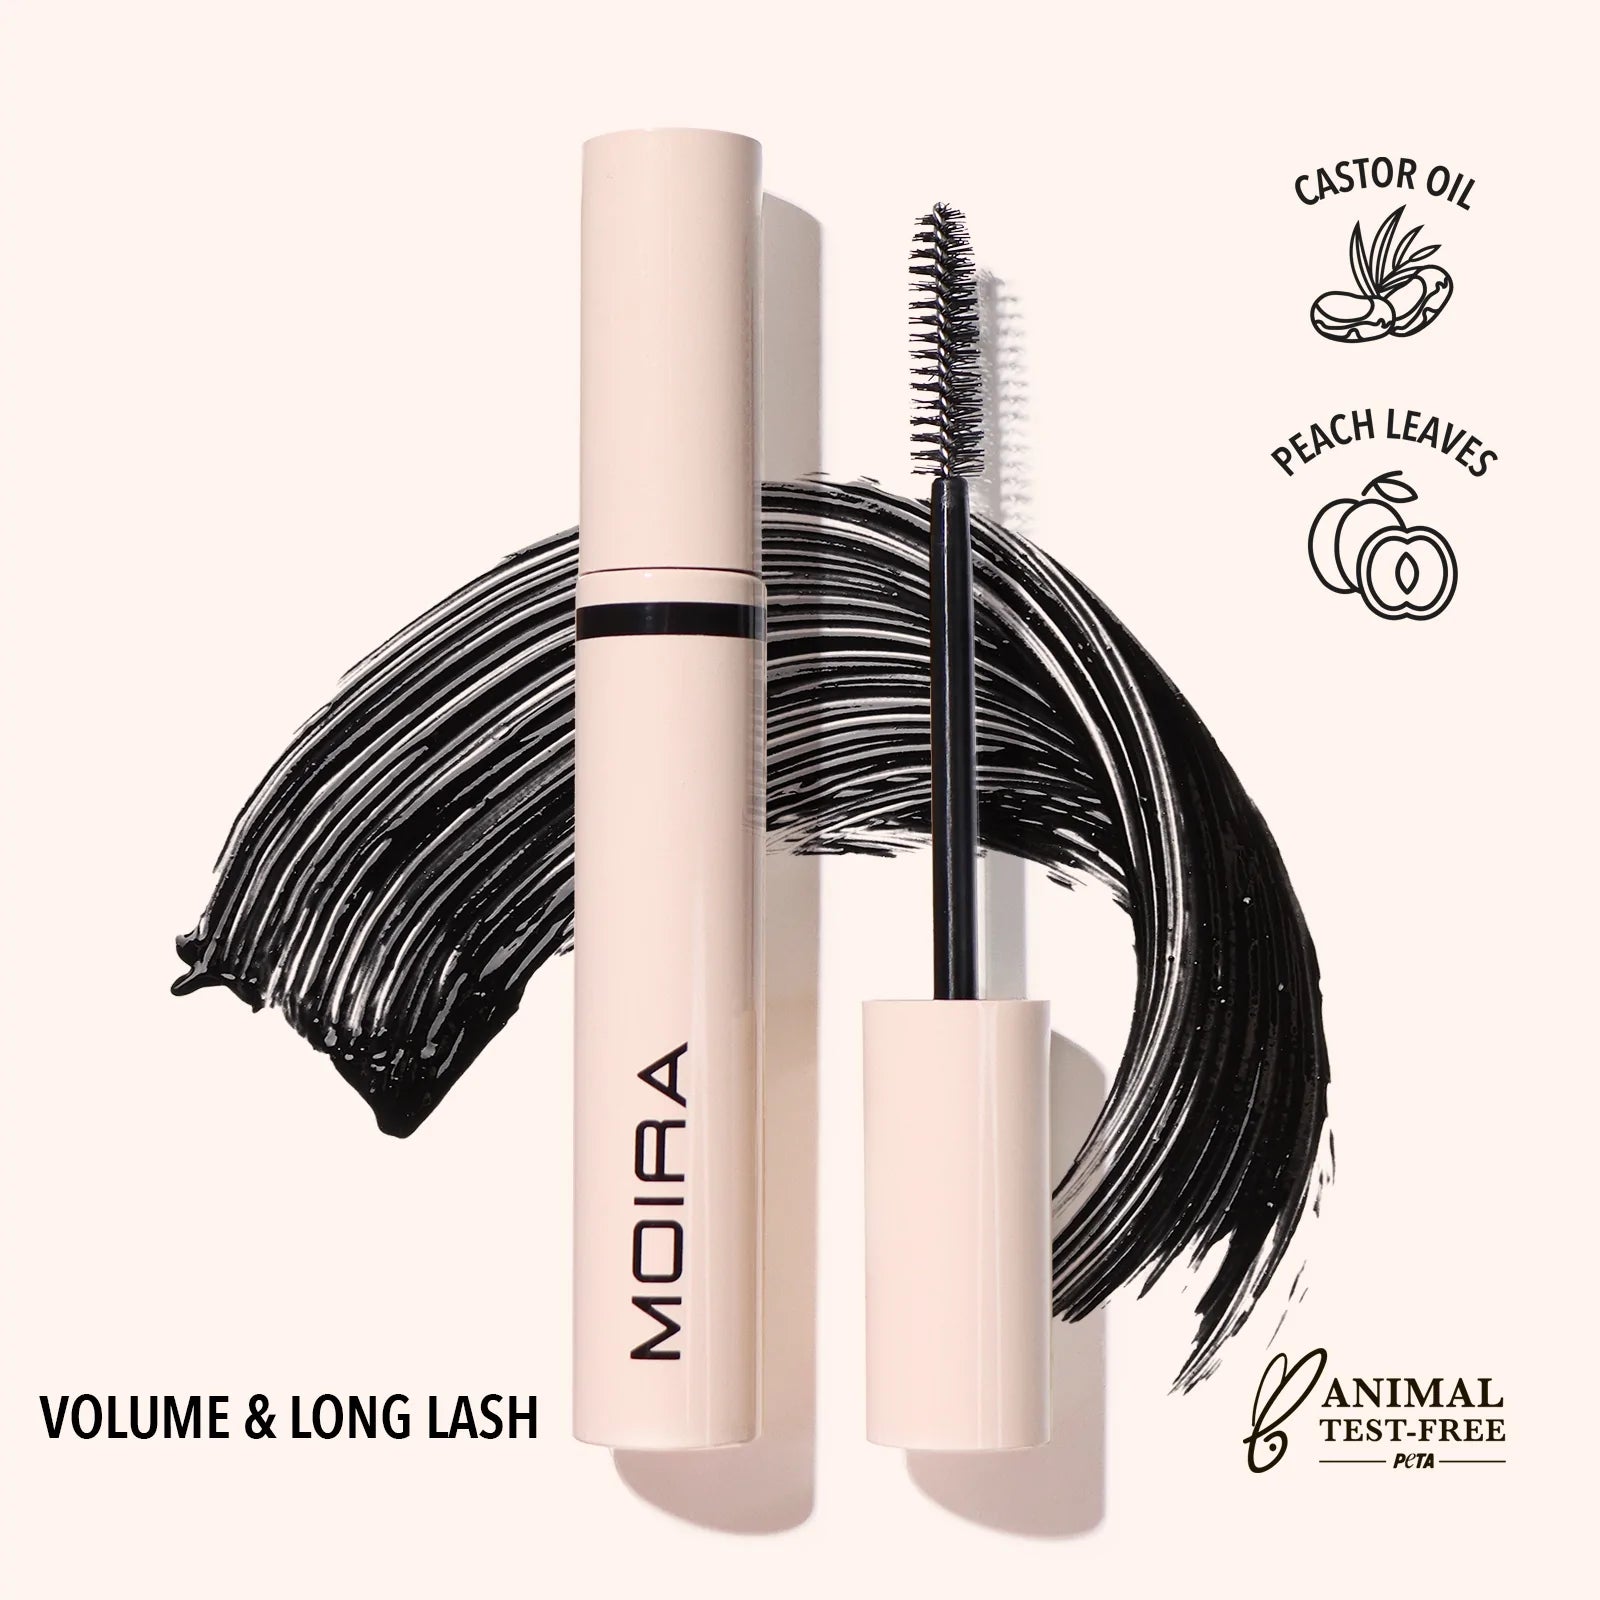 A30 Volume and Long Lash Mascara